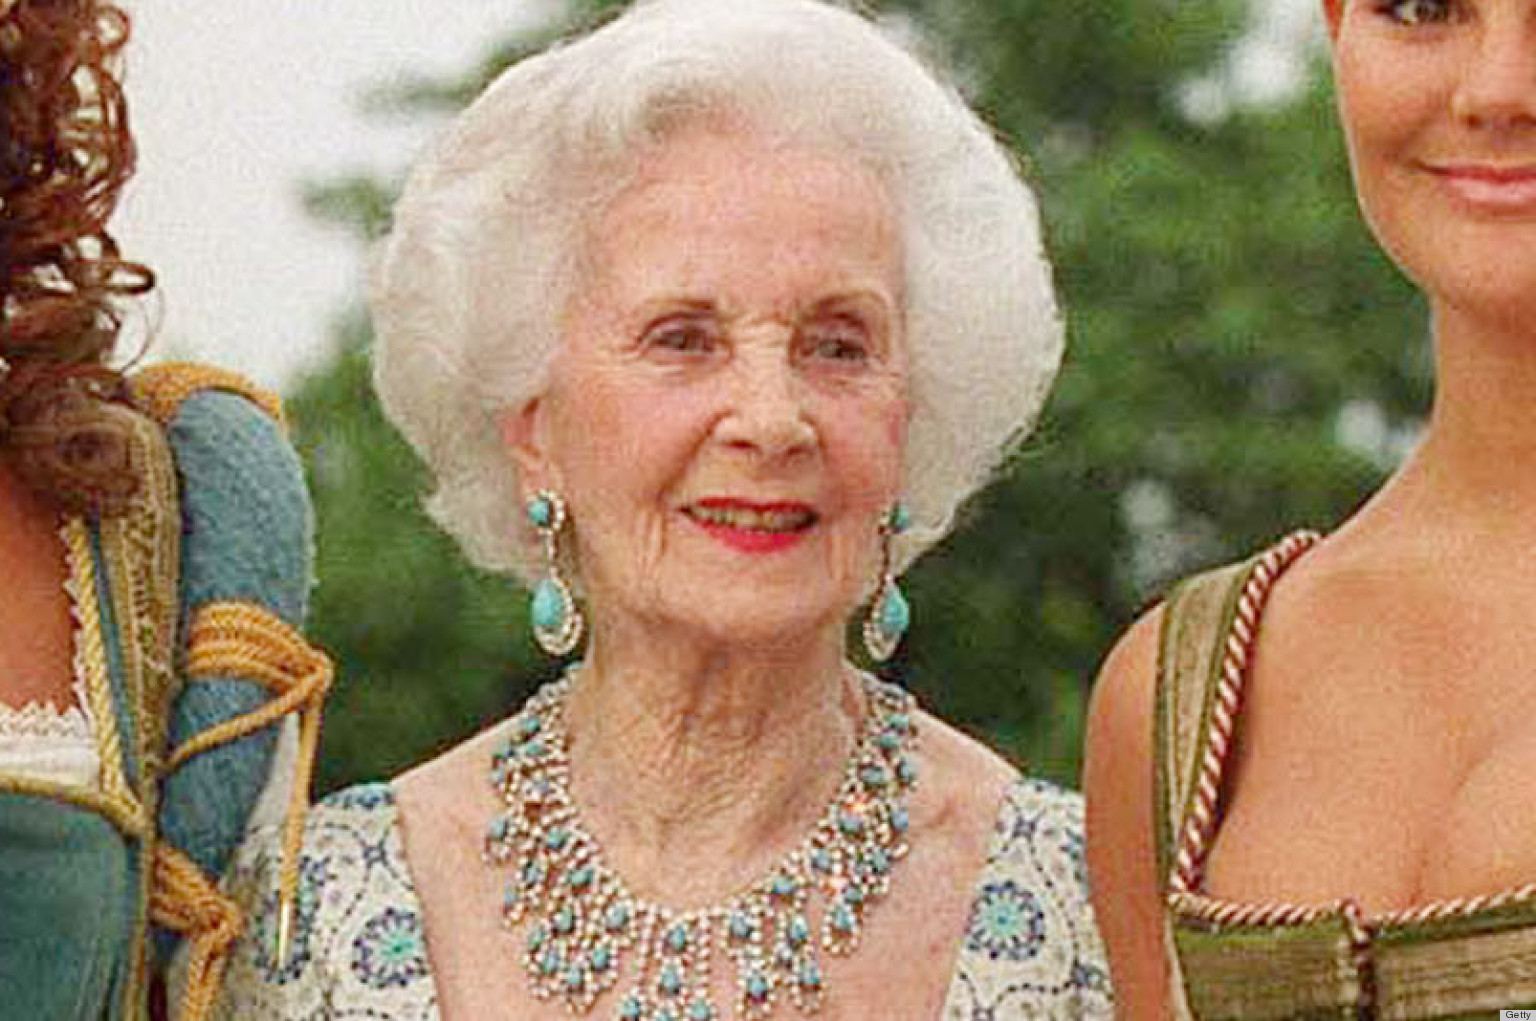 Swedish Princess Dies: A Look Back At Princess Lilian's Life & Style